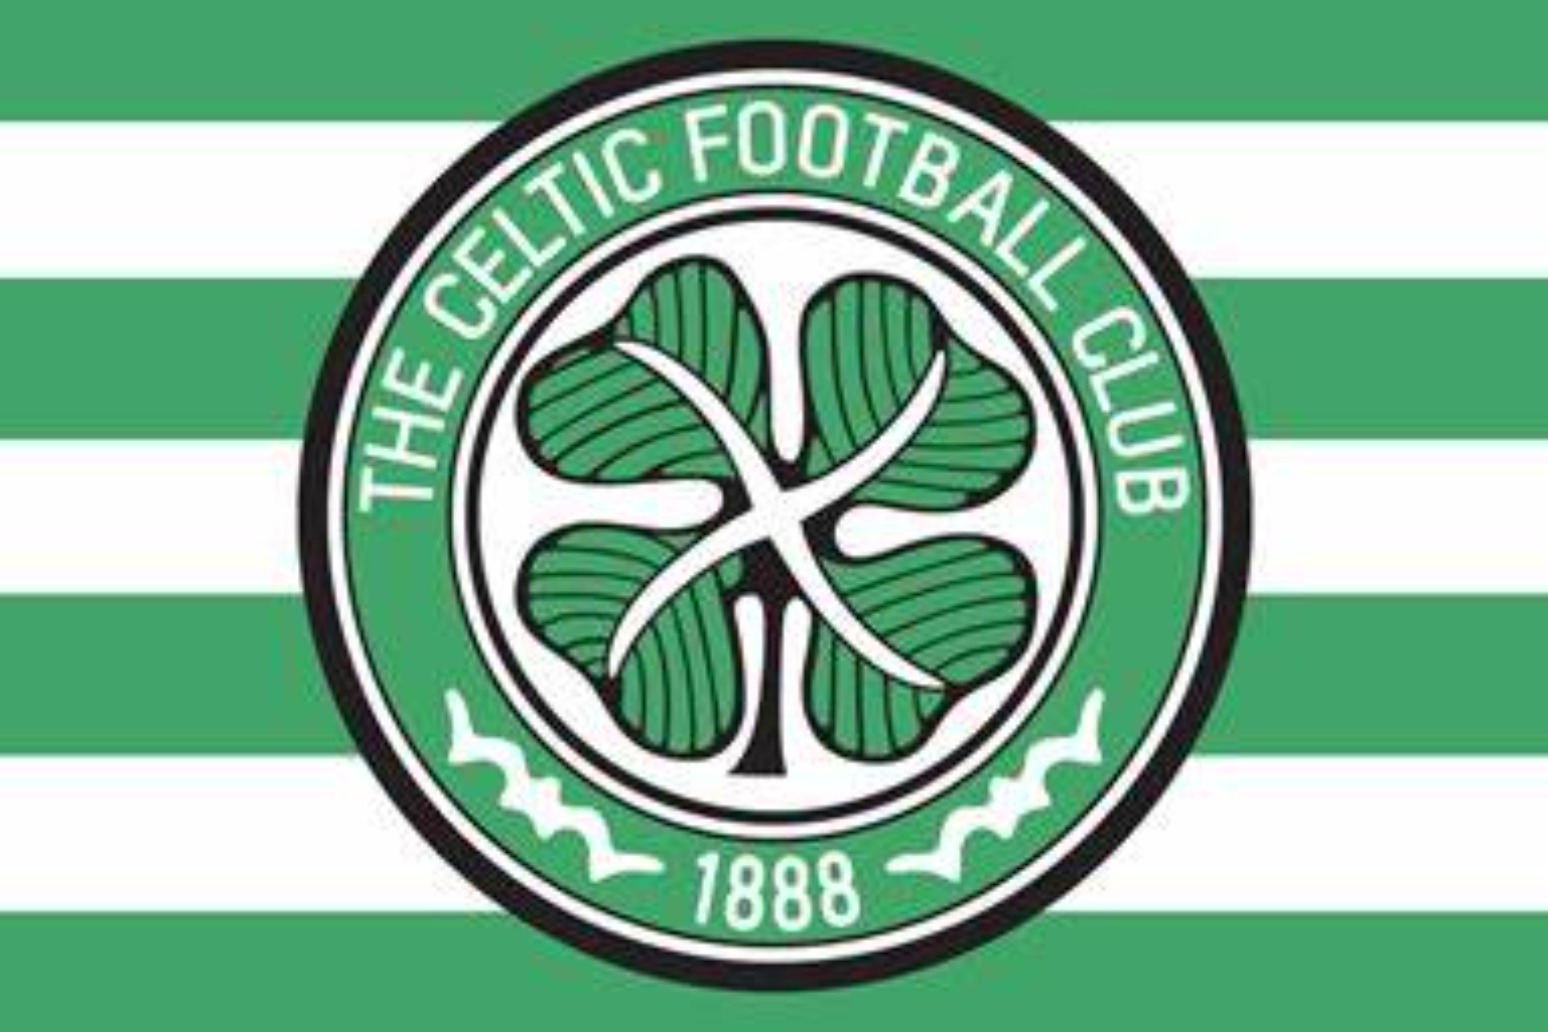 Neil Lennon says Scottish Cup win would complete ‘monumental’ Celtic achievement 